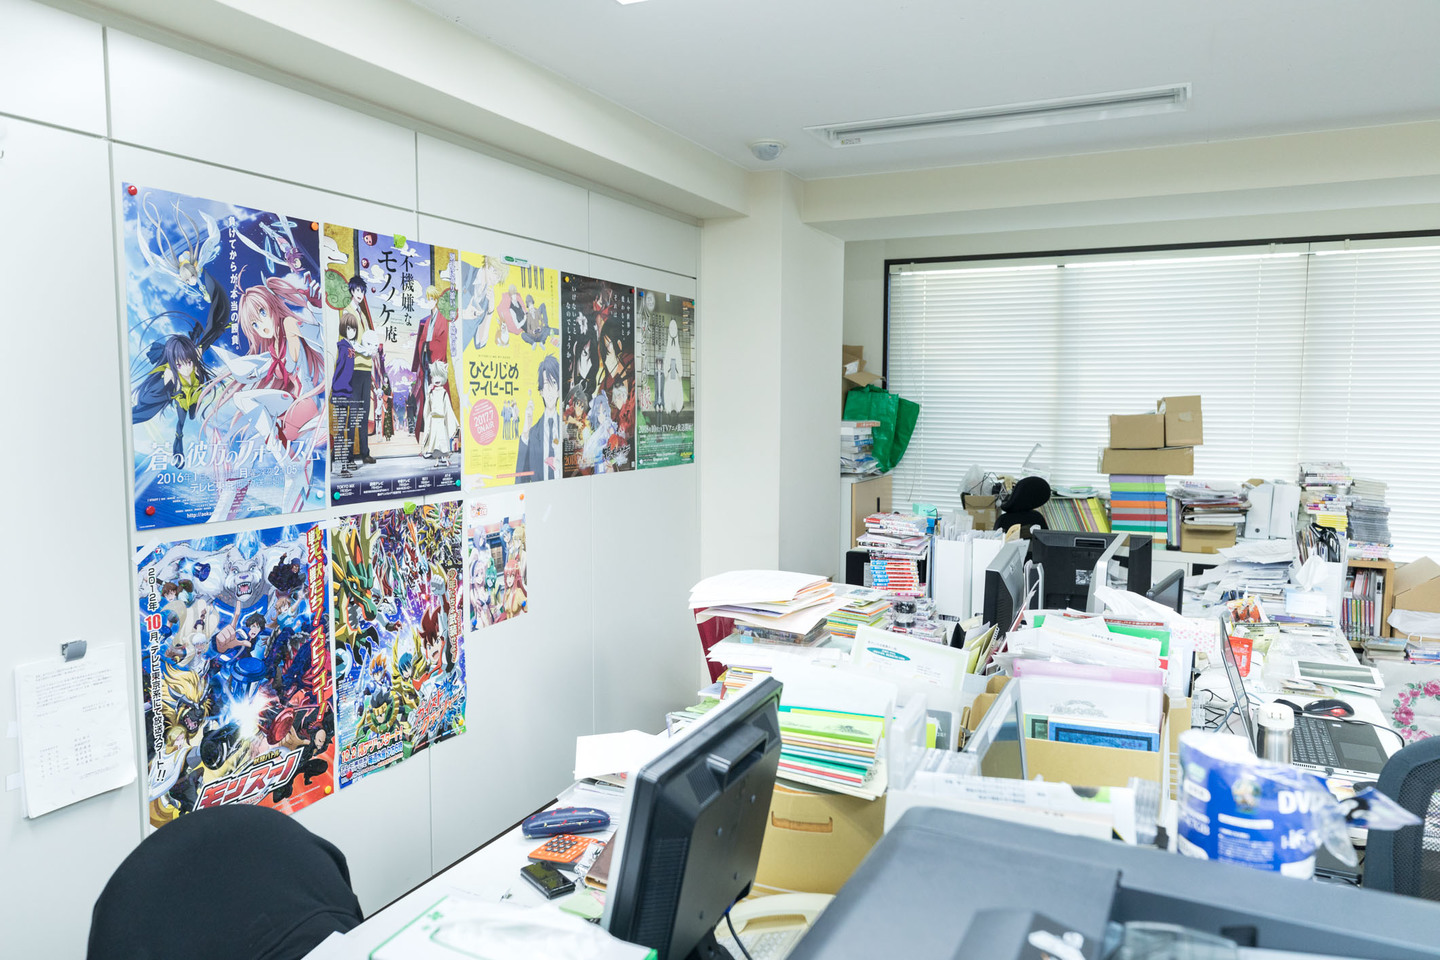 日本でも数少ないアニメの音響制作会社で 制作進行のアシスタント募集 株式会社叶音のの採用 Wantedly